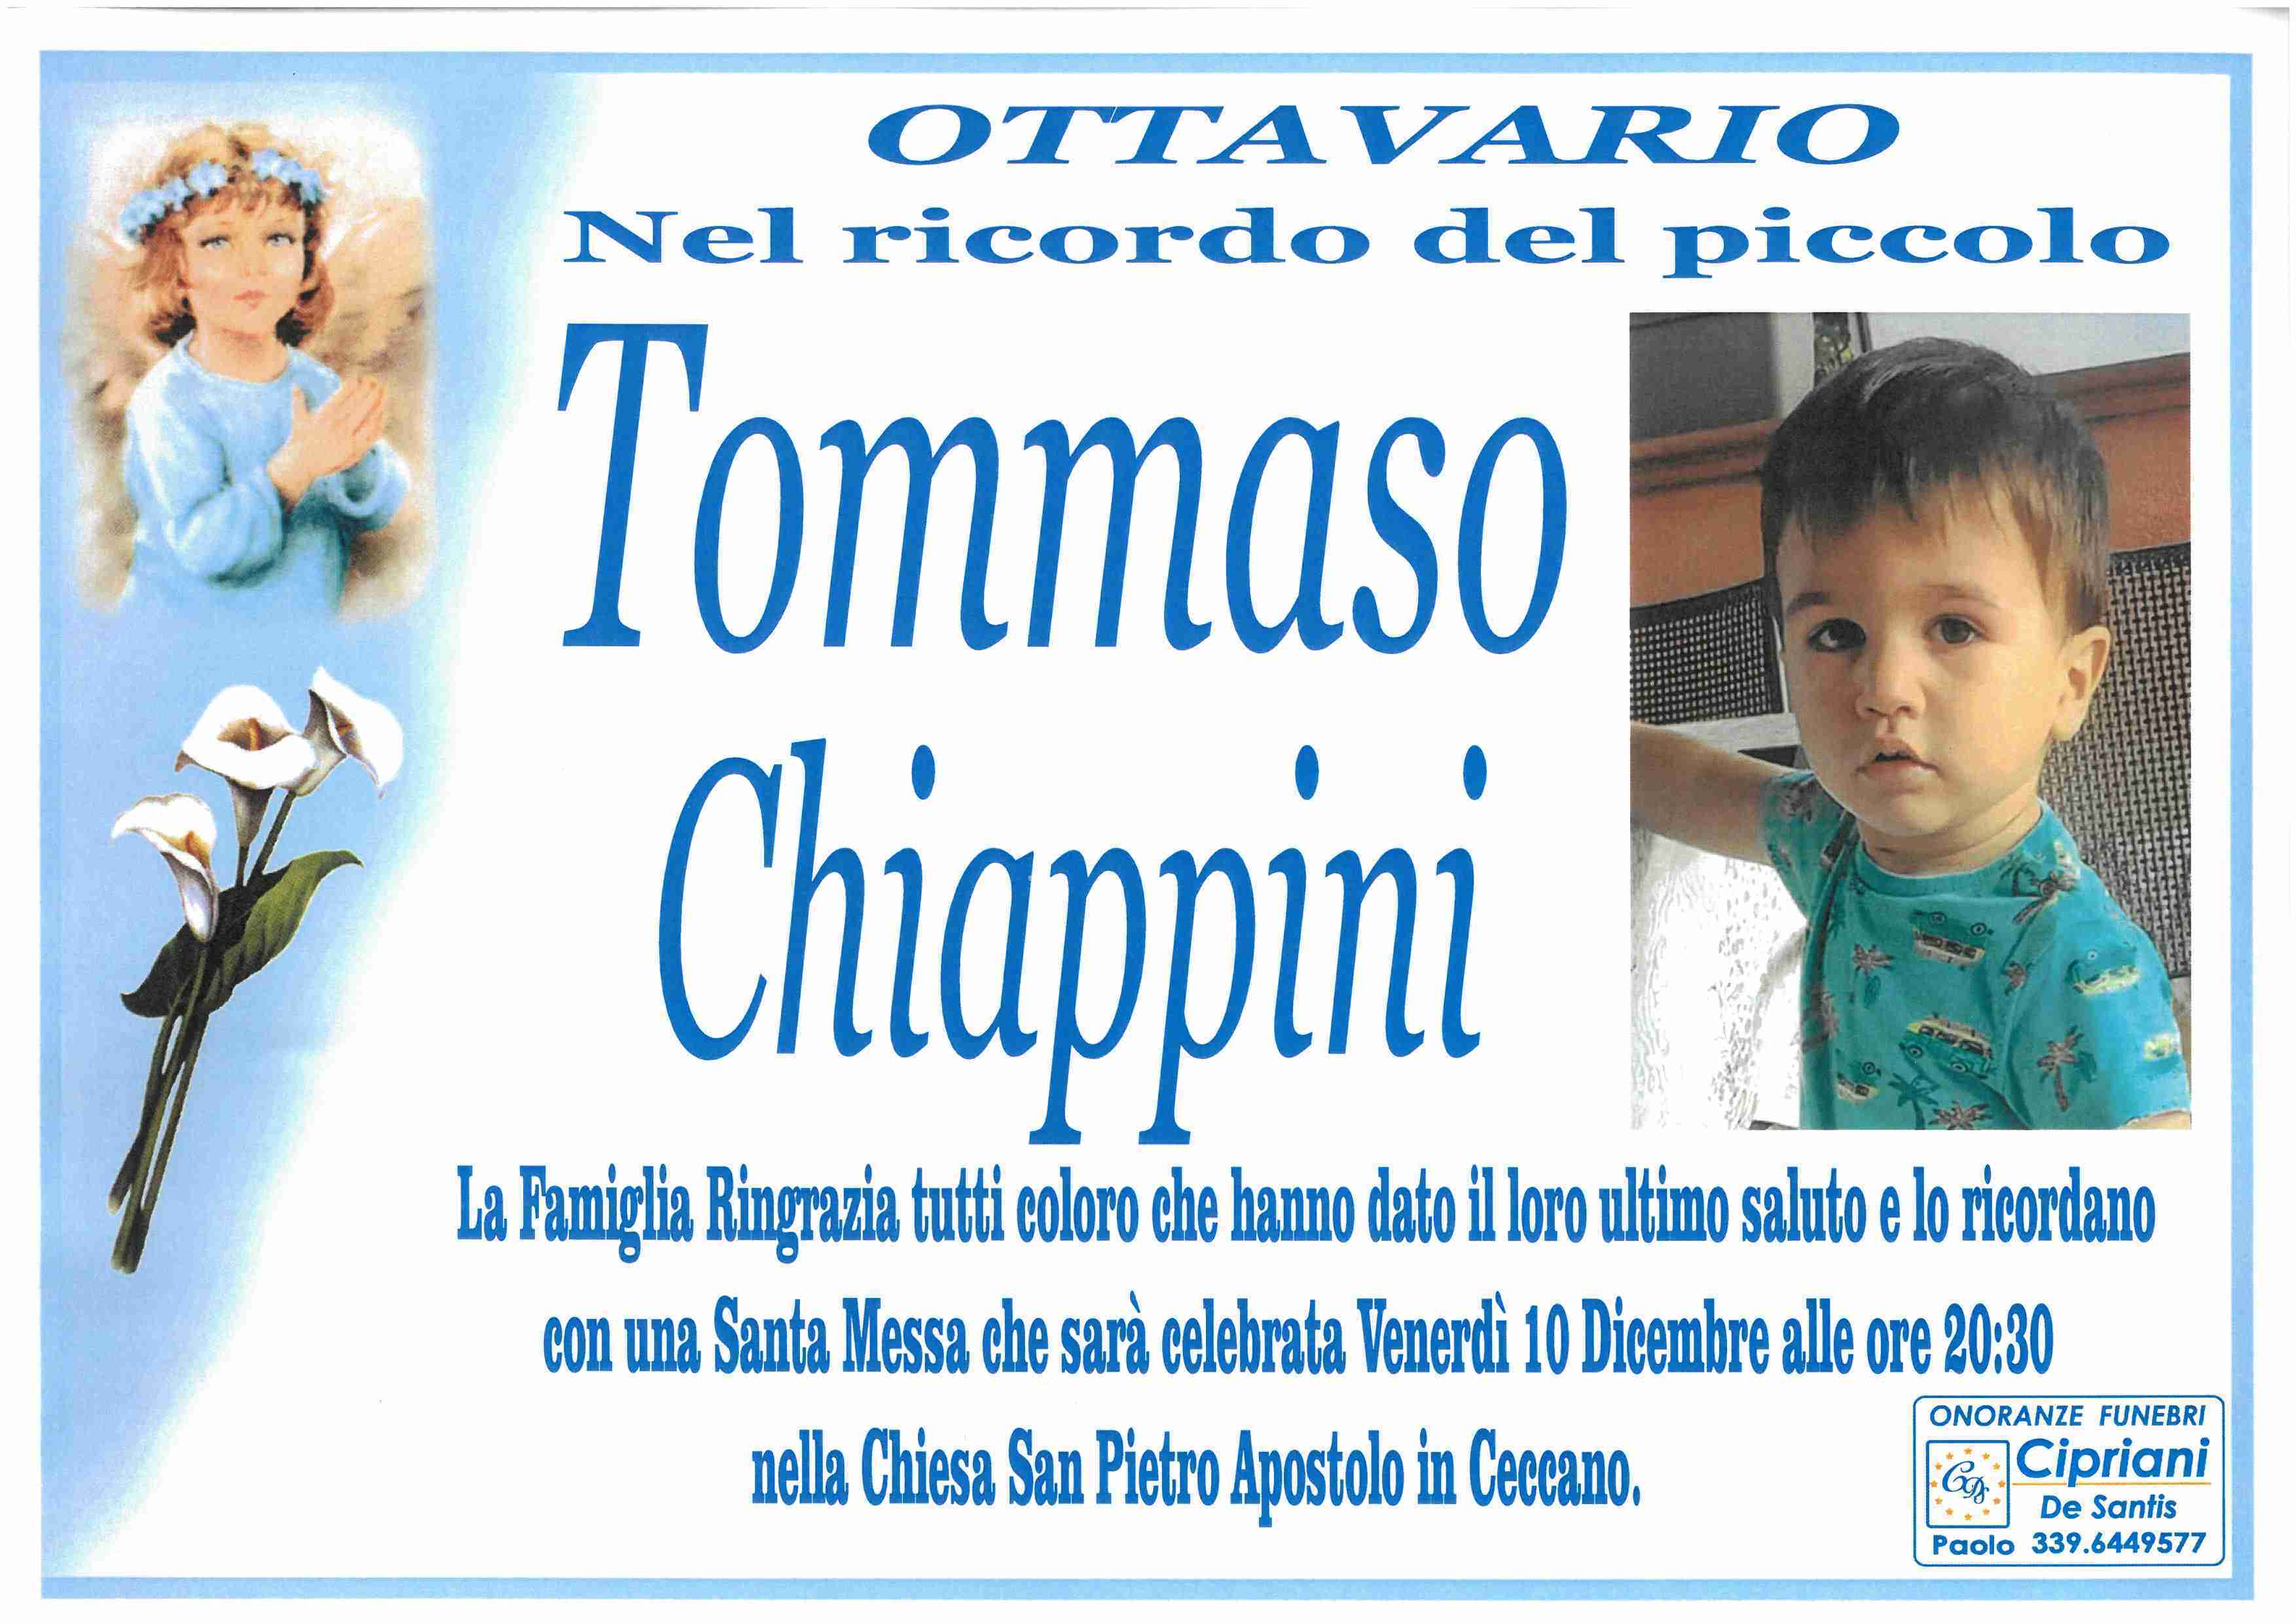 Tommaso Chiappini